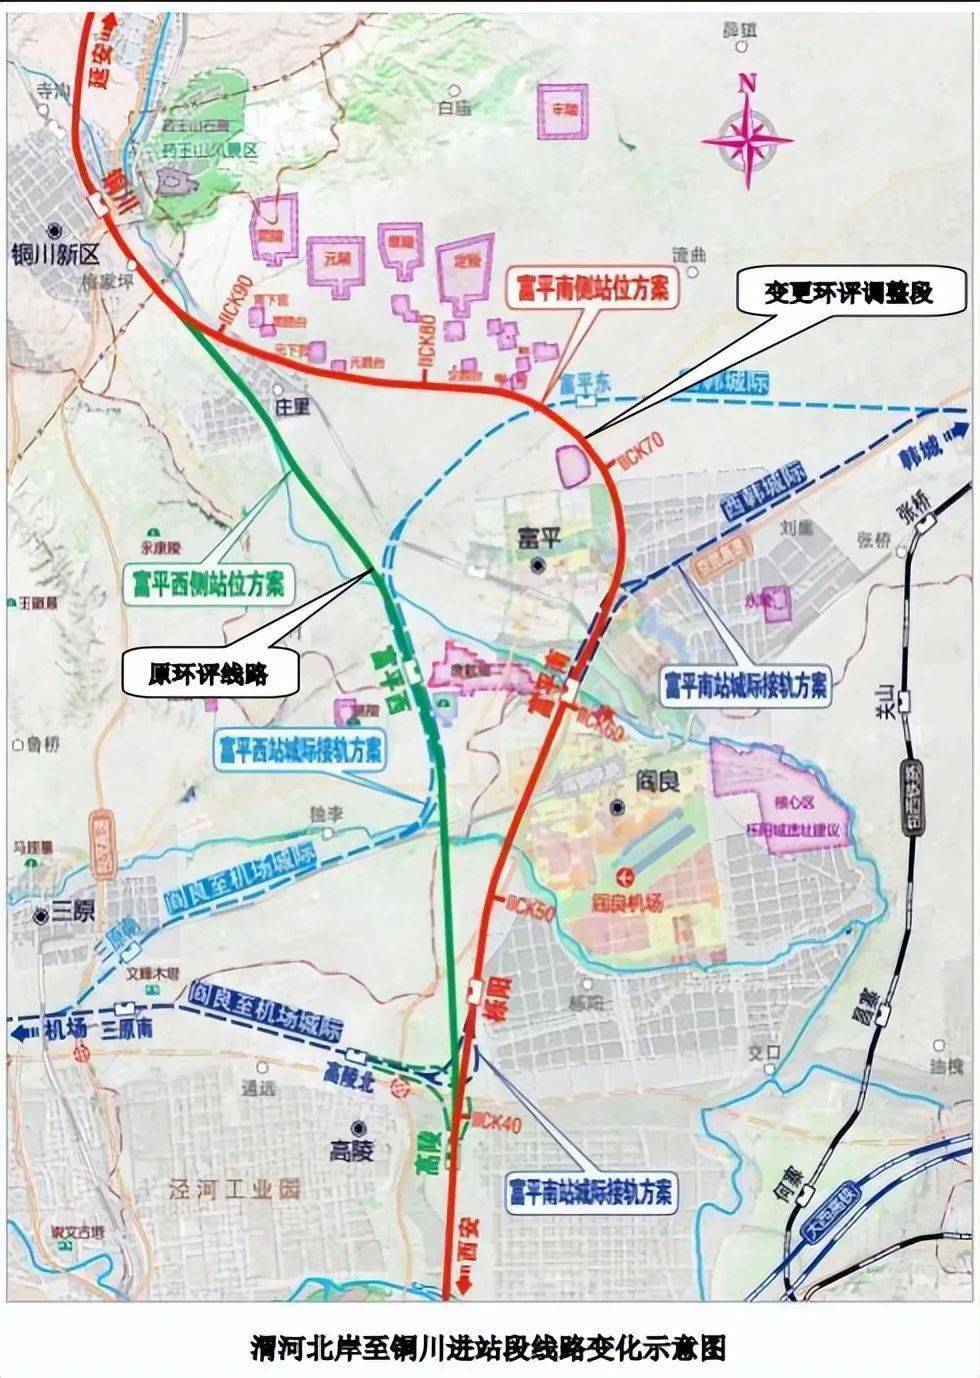 西延高铁西铜段可研报告获批!计划于2022年12月份开工建设!